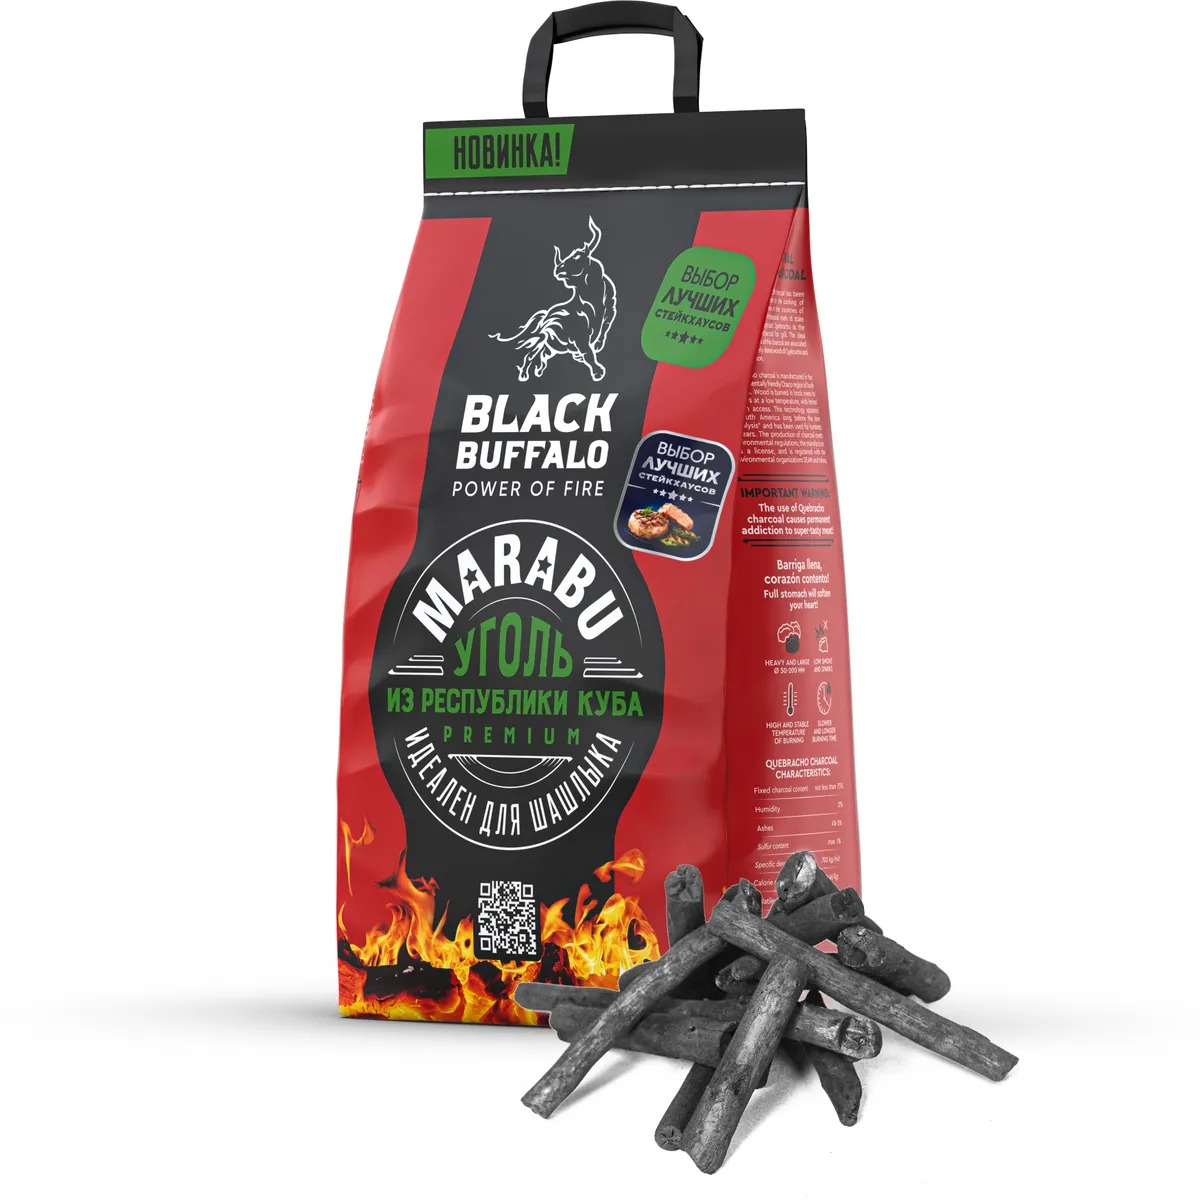 Уголь древесный Black buffalo премиум марабу 5кг уголь кусковой древесный 800 degrees долгое горение мешок 3 кг